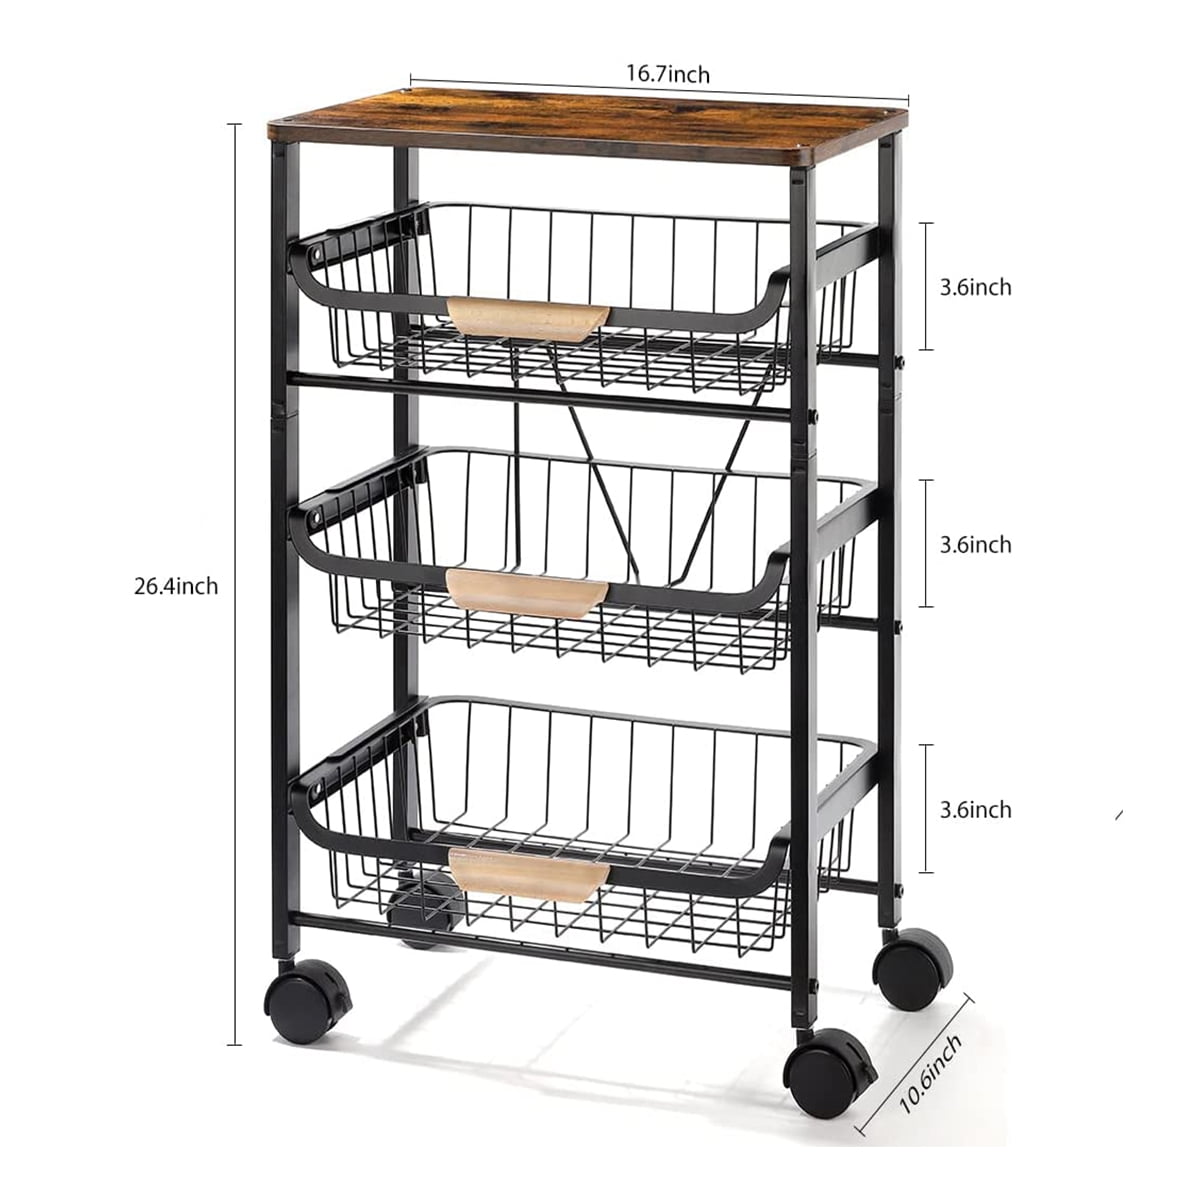 Werseon Kitchen Storage Rolling Cart， Kitchen Cart with Lockable Wheels， 4 Tier Metal Wire Basket Shelf Rolling Storage Cart， Black